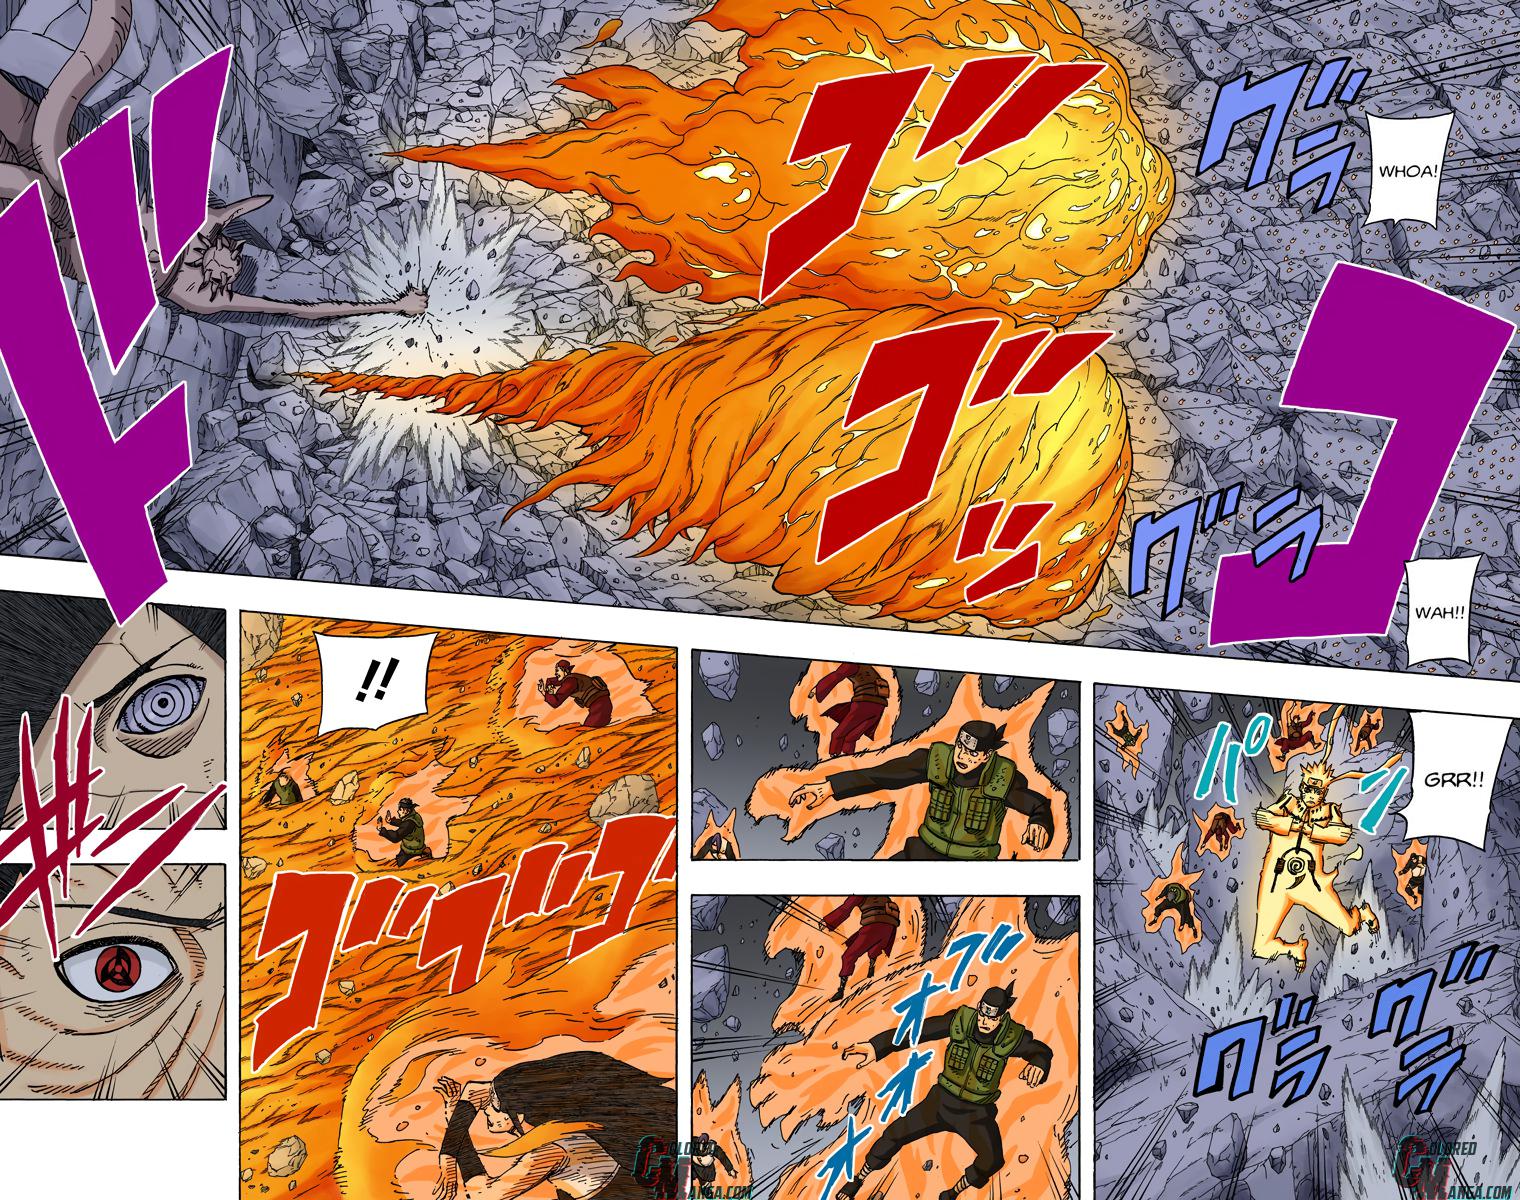 Como Itachi Edo se sairia no lugar de Obito? (e vice e versa) - Itachi vs Guy, Kakashi e Naruto - Obito vs Kabuto - Página 2 0628-008